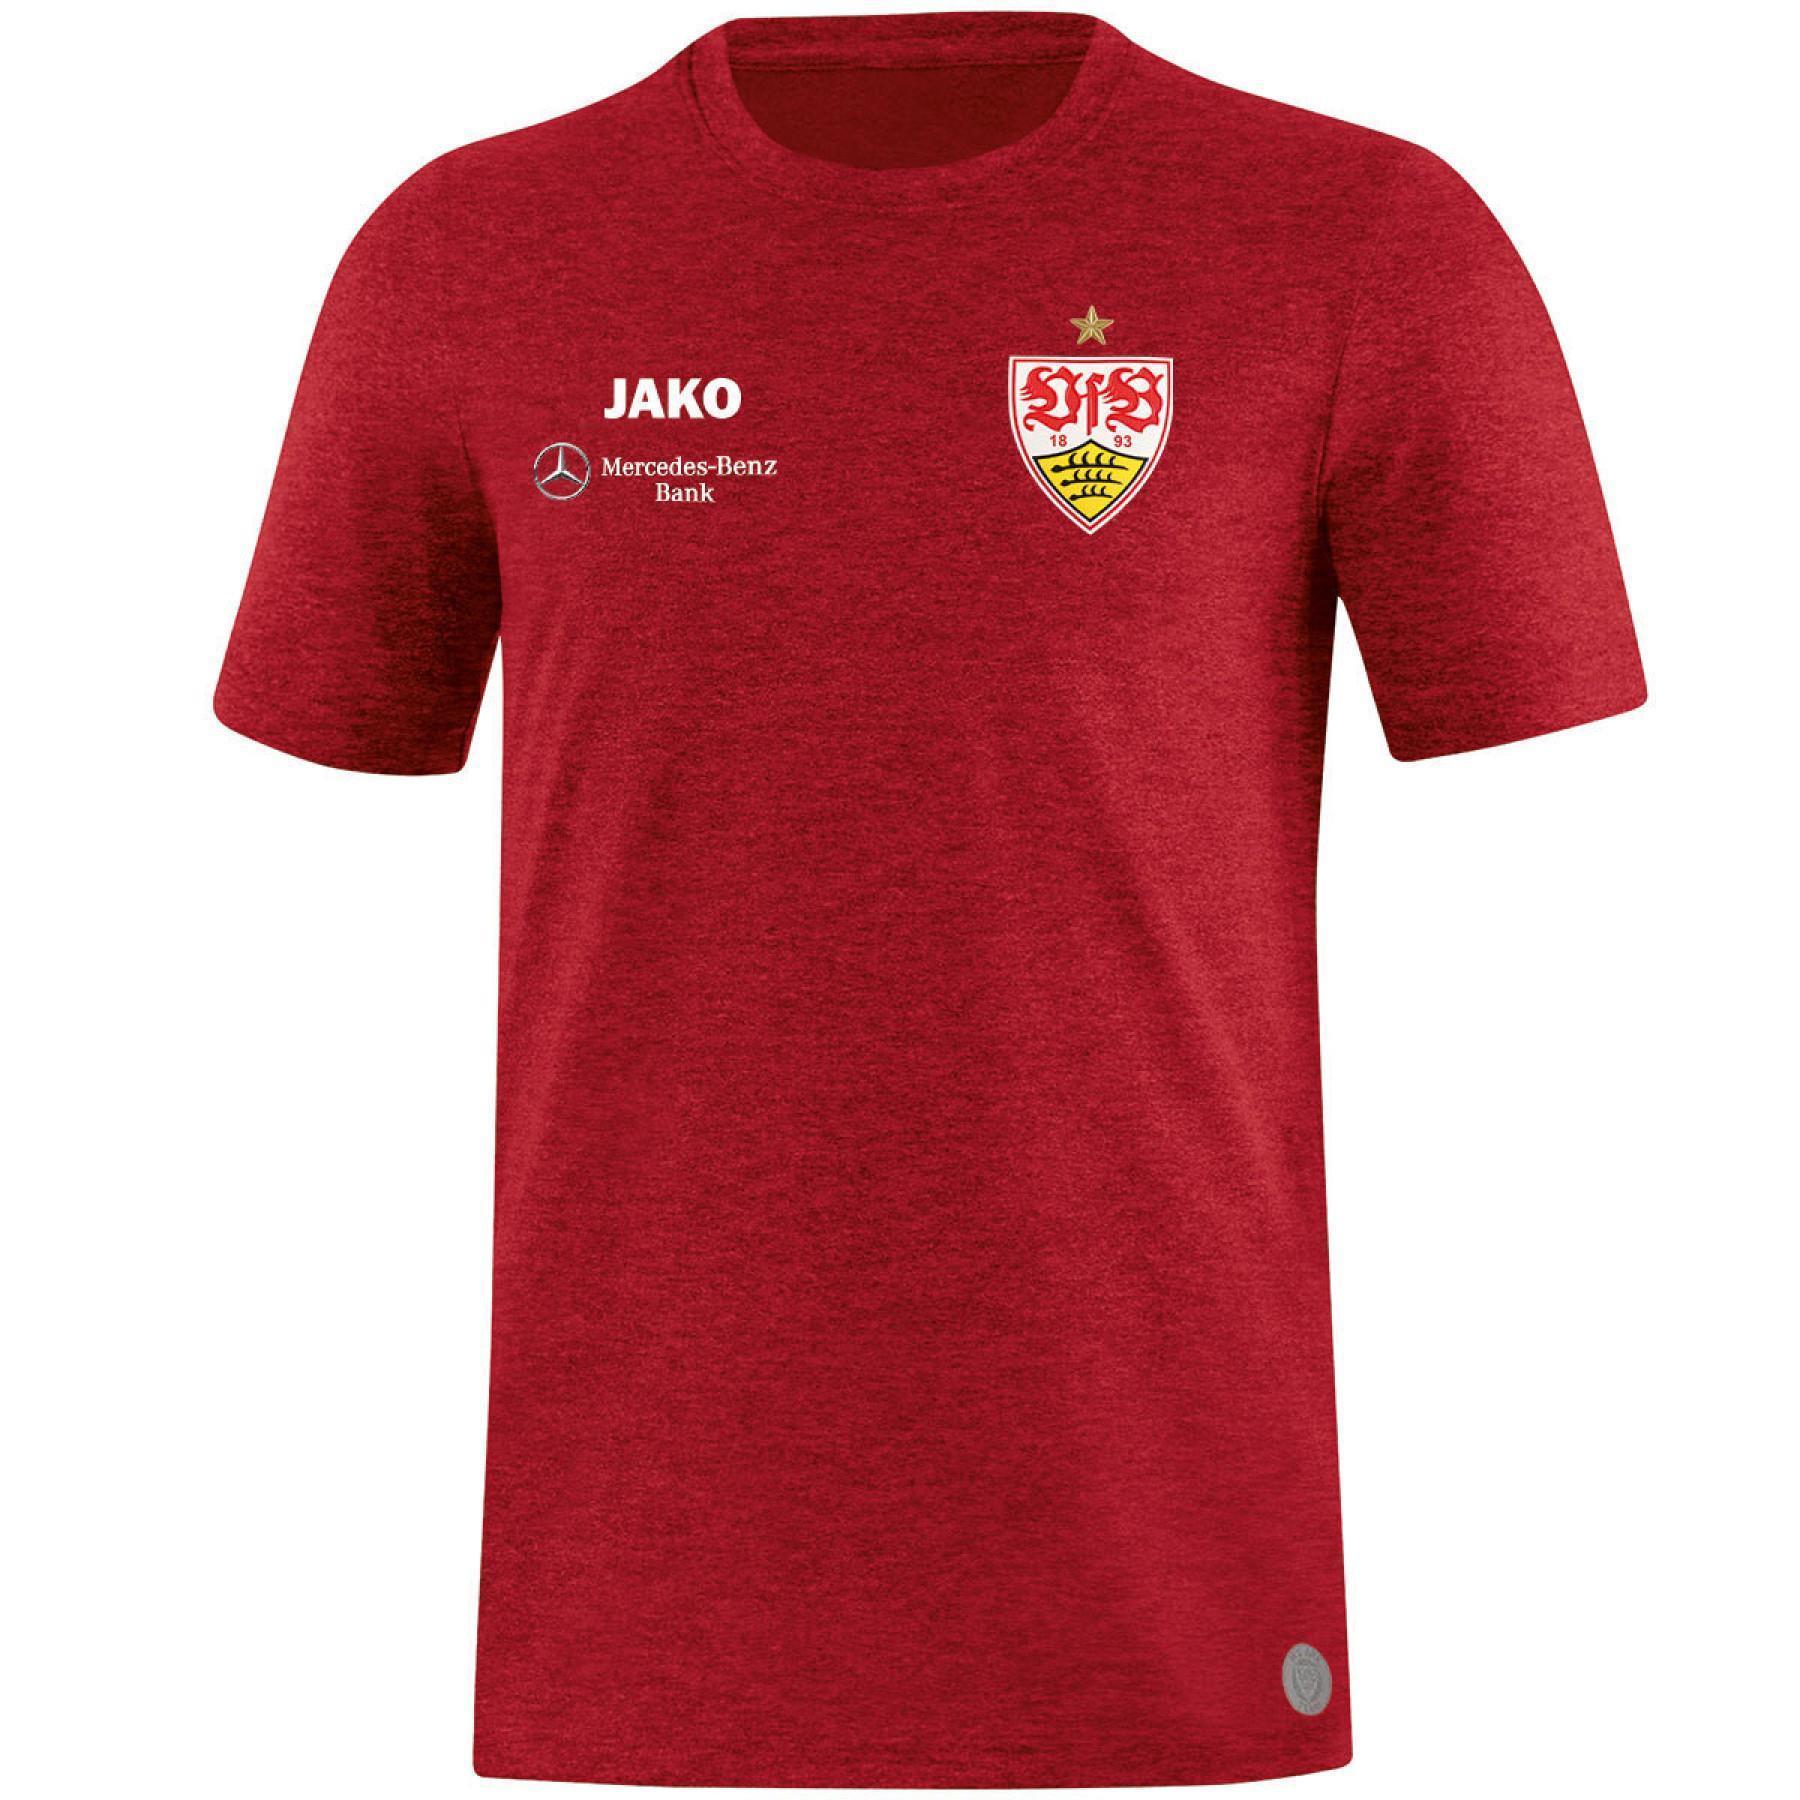 Koszulka VfB Stuttgart Premium